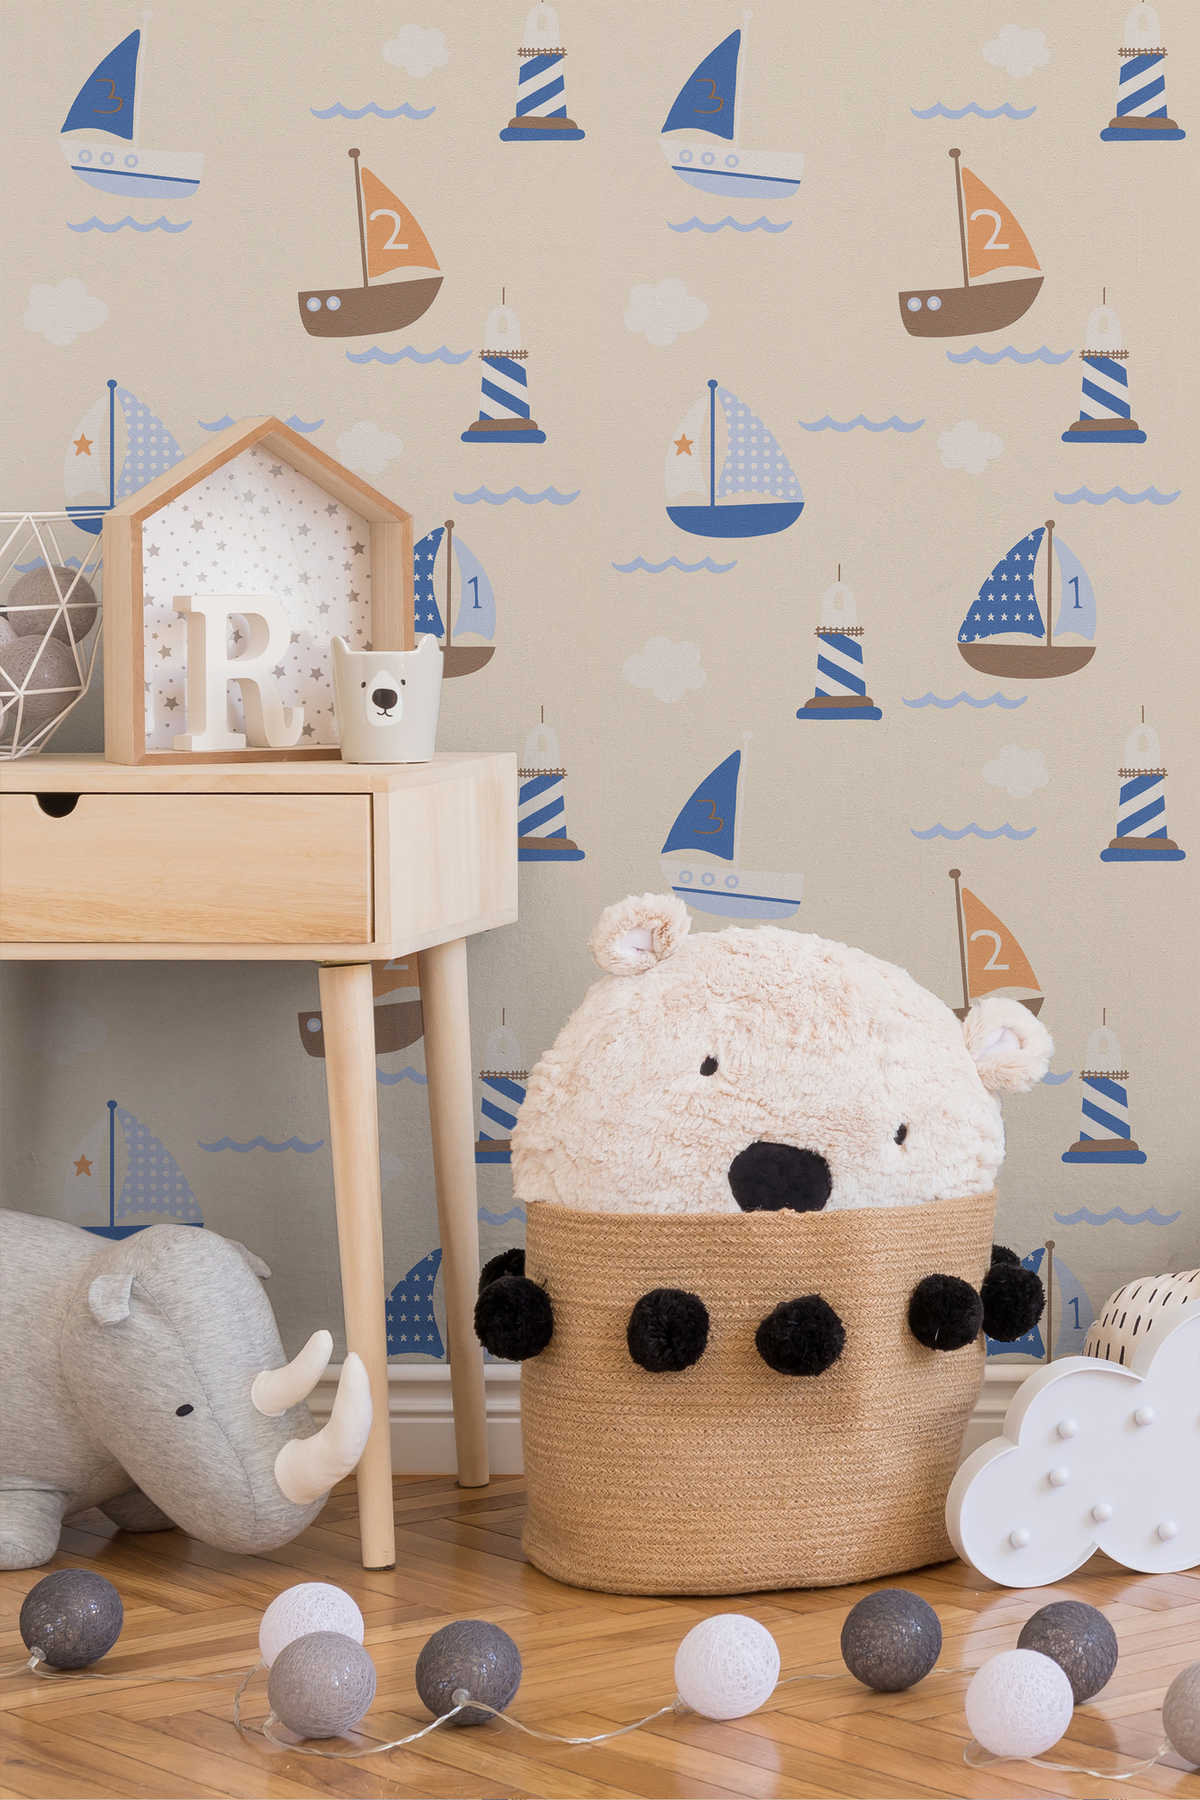             Papel pintado de habitación infantil con barco y faro - azul, beige
        